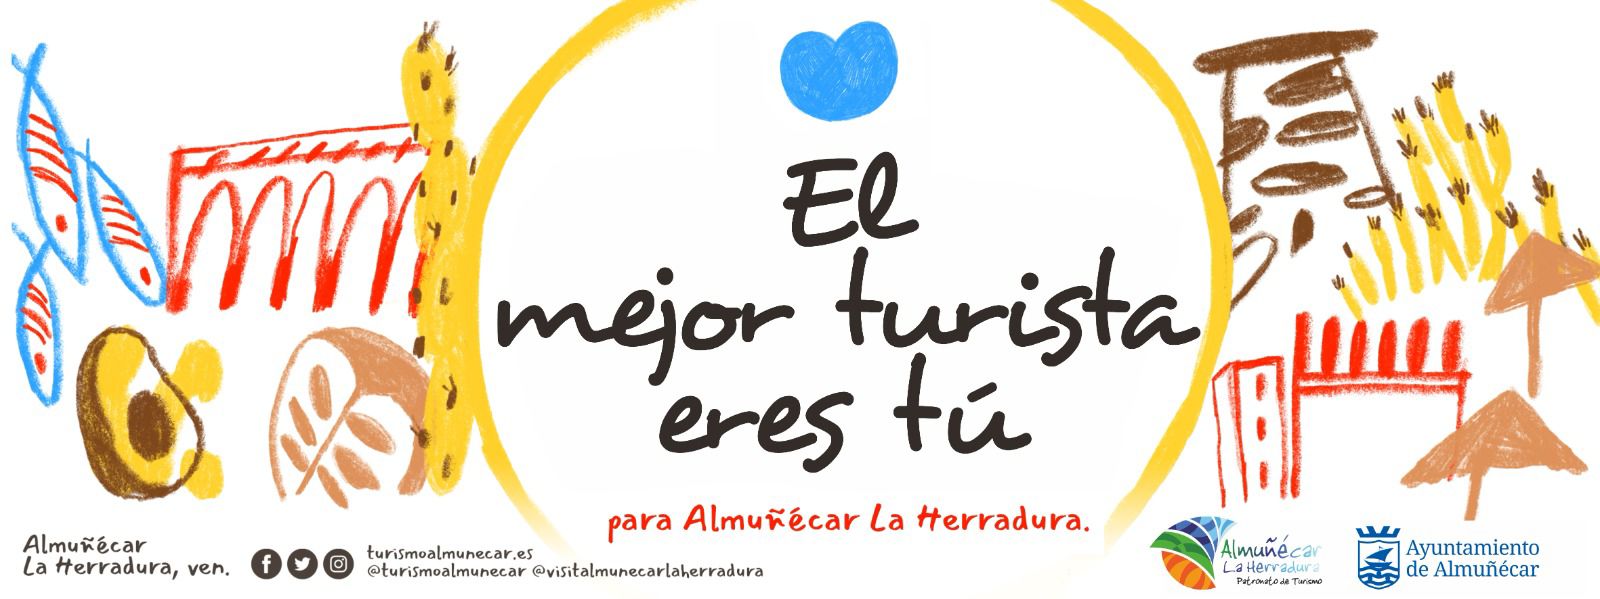 La gala de los Premios Turismo de Almucar y La Herradura se aplaza al 28 de septiembre.